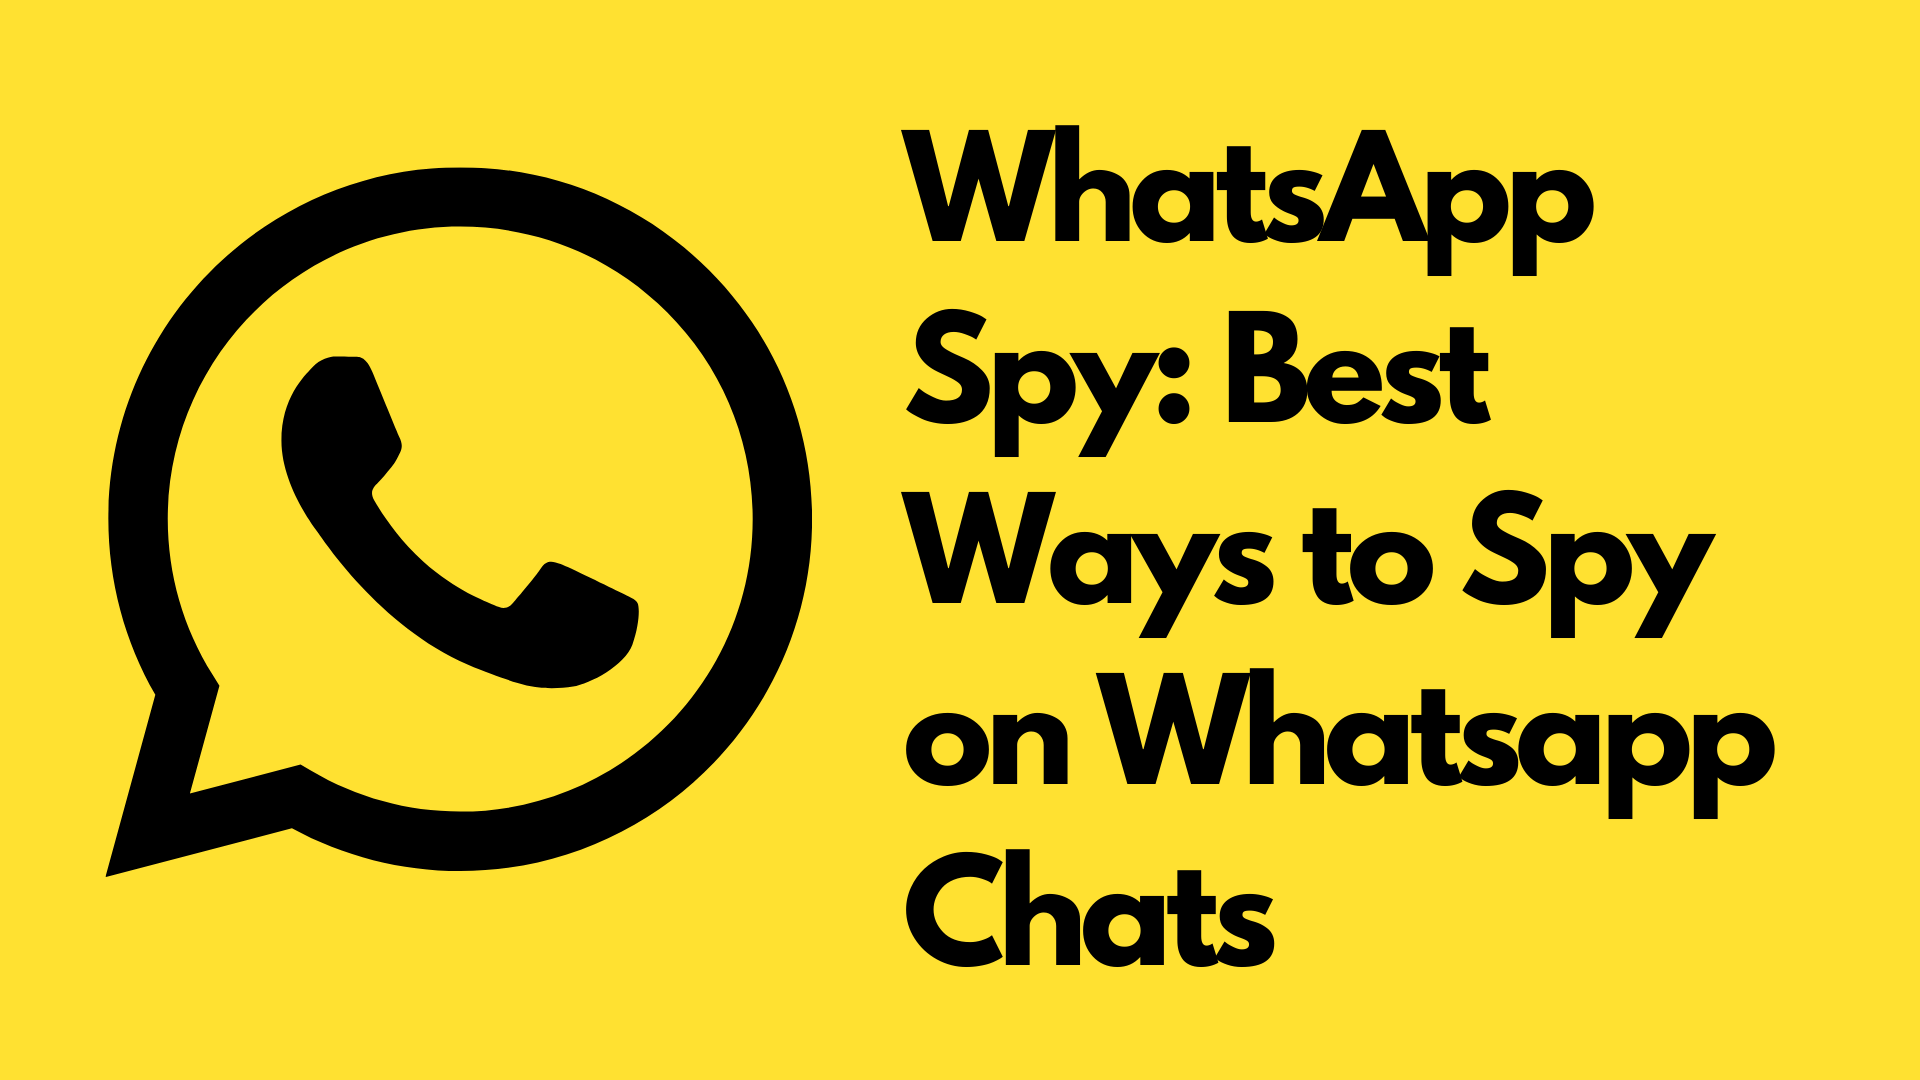 Ways to Spy on WhatsApp – Best WhatsApp Spy Apps in 2022